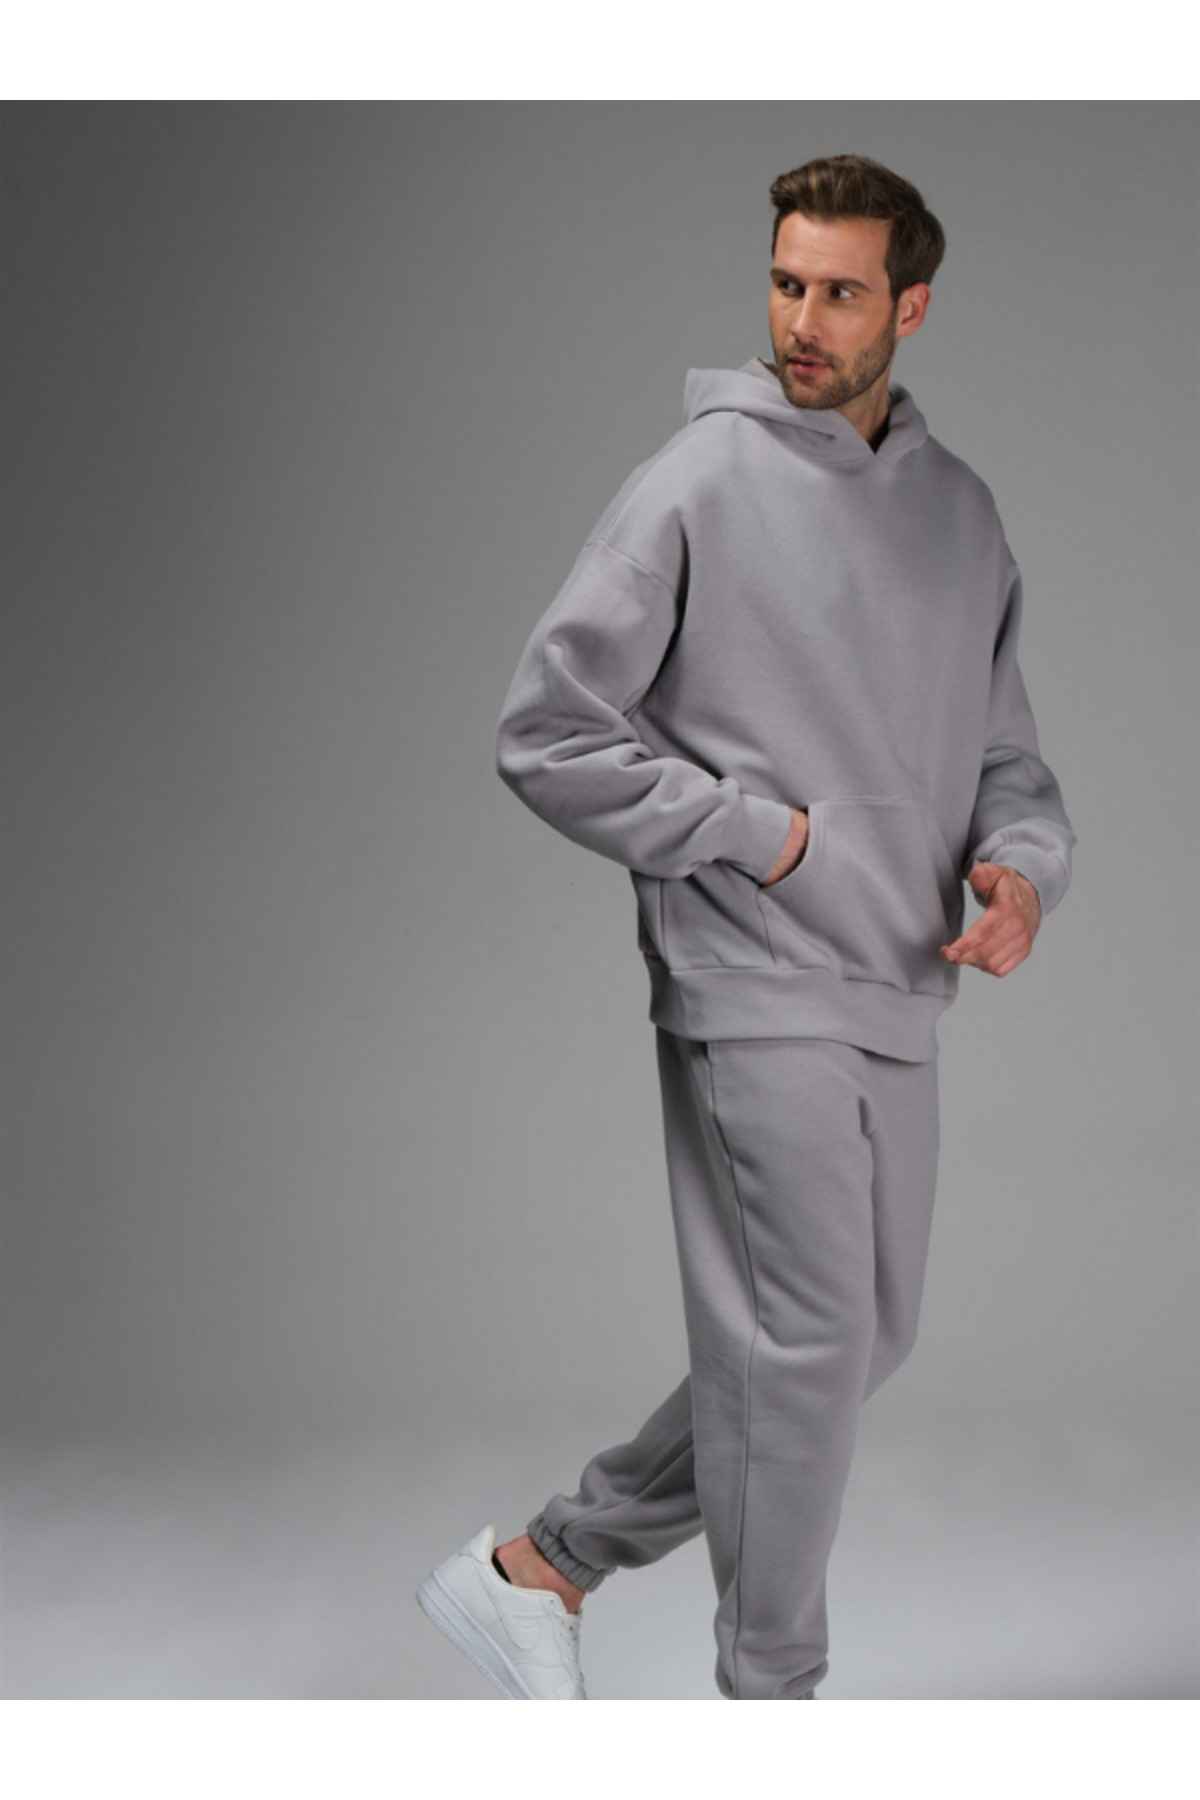 ست لباس ورزشی مردانه سرپوش خاکستری با پاهای الاستیک 3 نخی